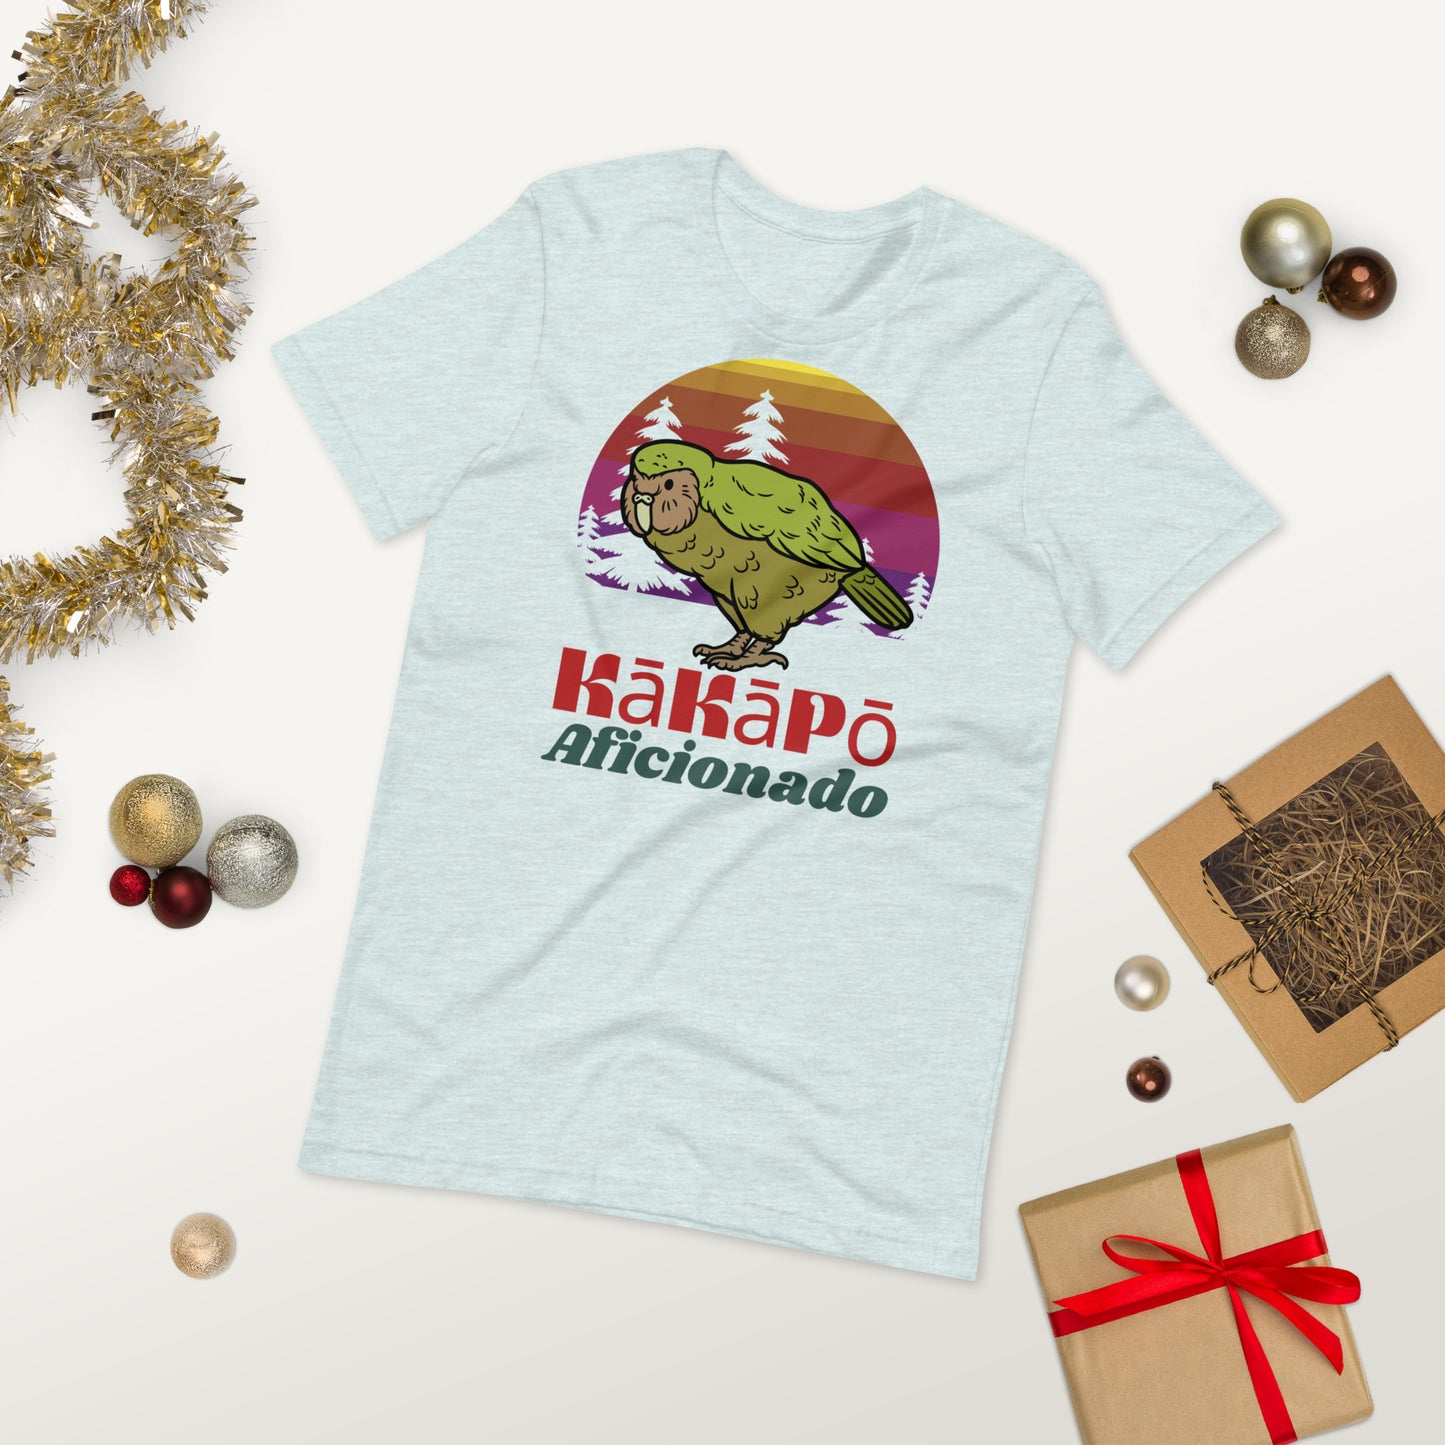 Men's Kakapo Aficionado